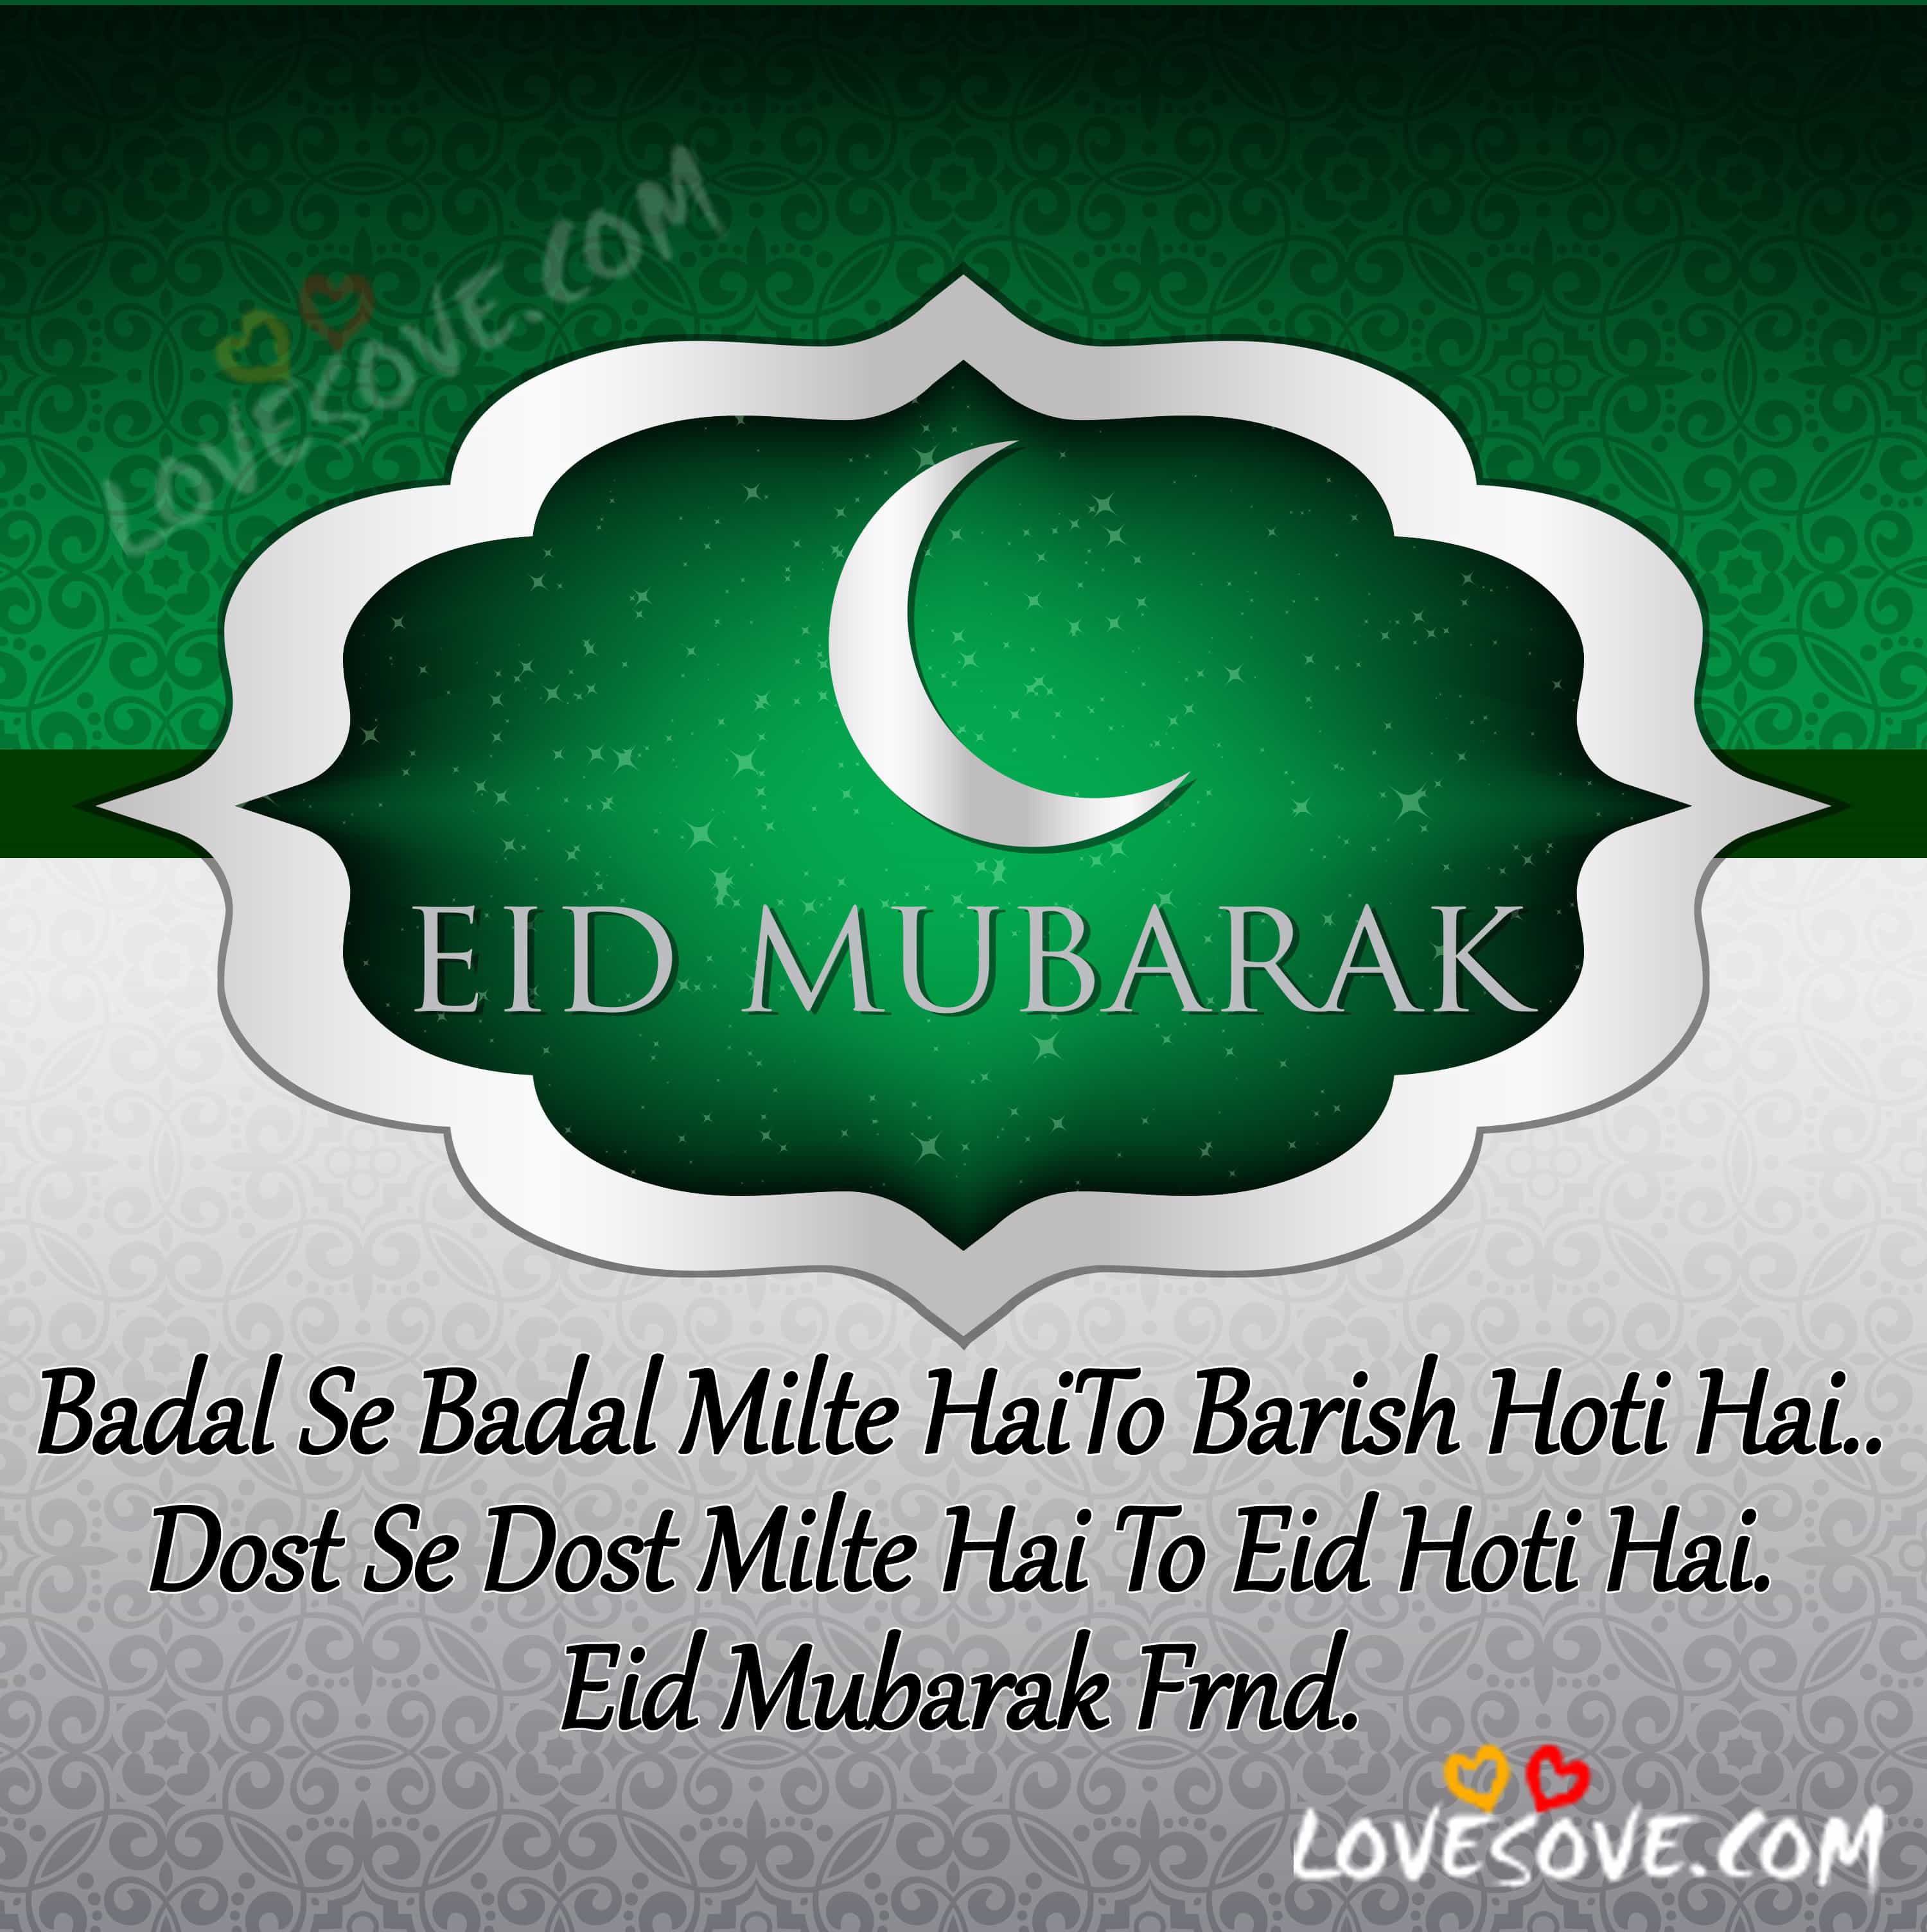 Eid Mubarak Dost, Eid Ki Badhai, Eid Mubarak Dost, Eid Ki Badhai, crescent moon eid mubarak blessed eid card on com